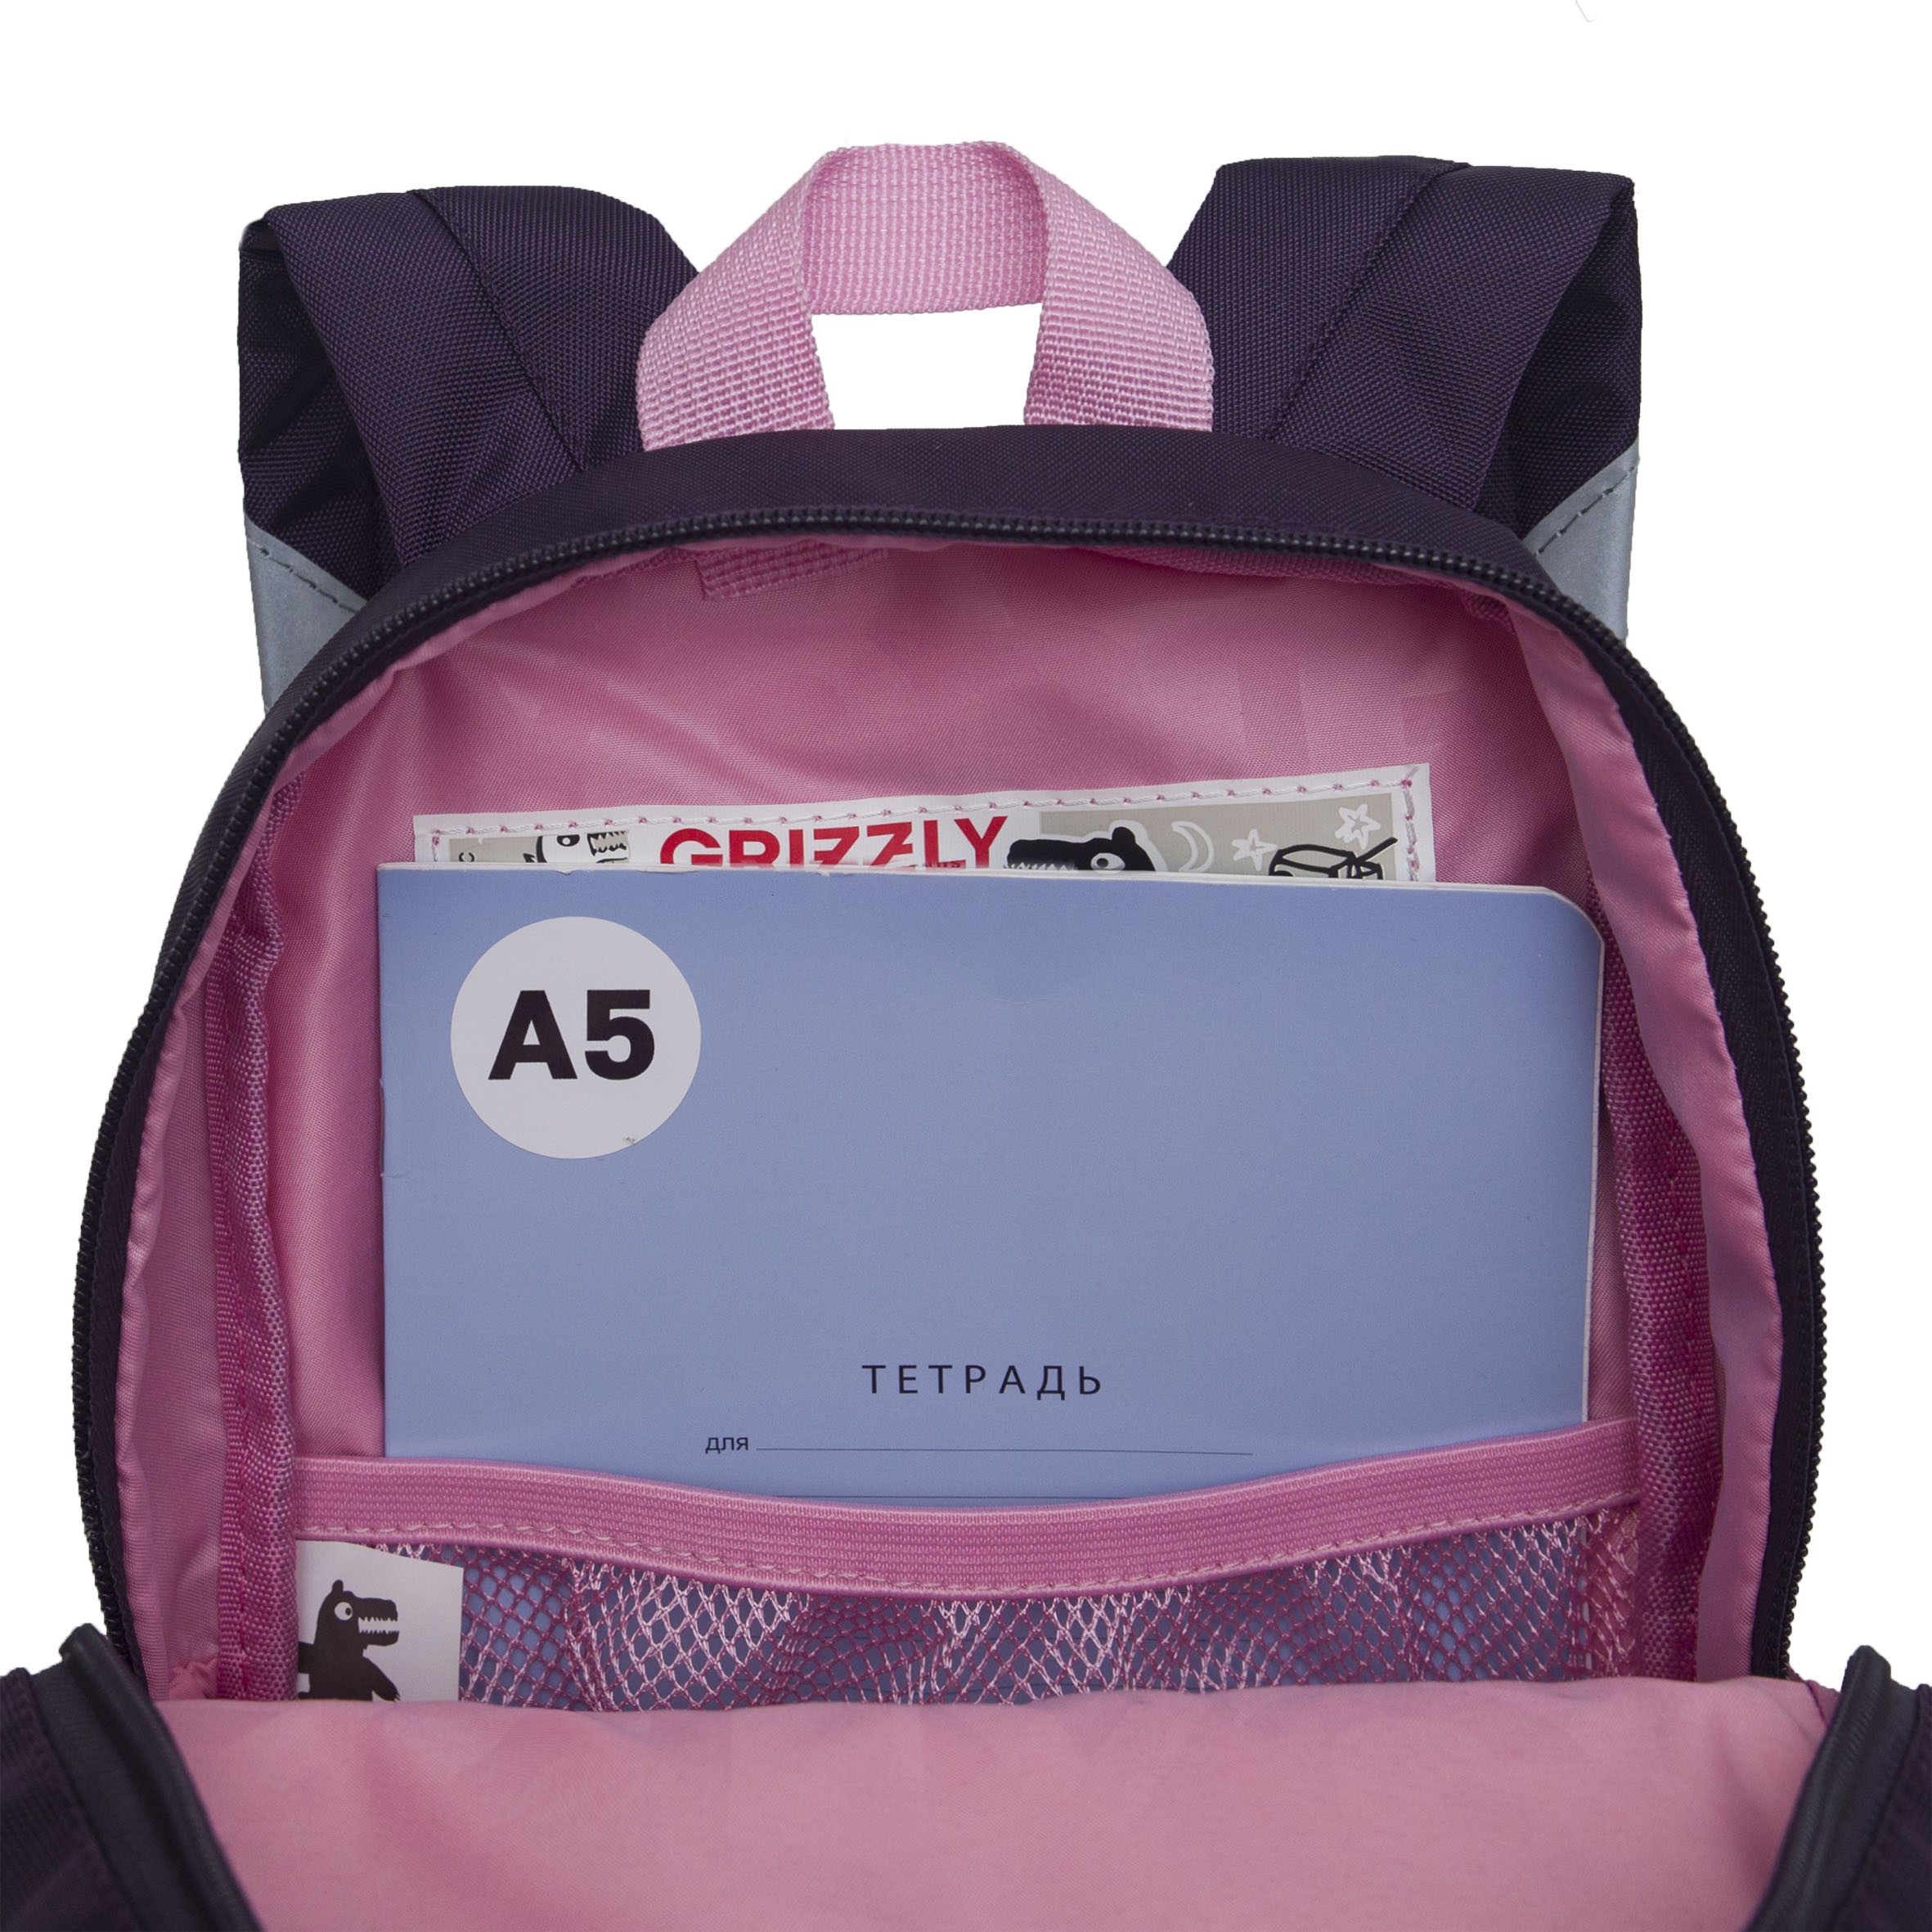 RK-276-2z рюкзак детский